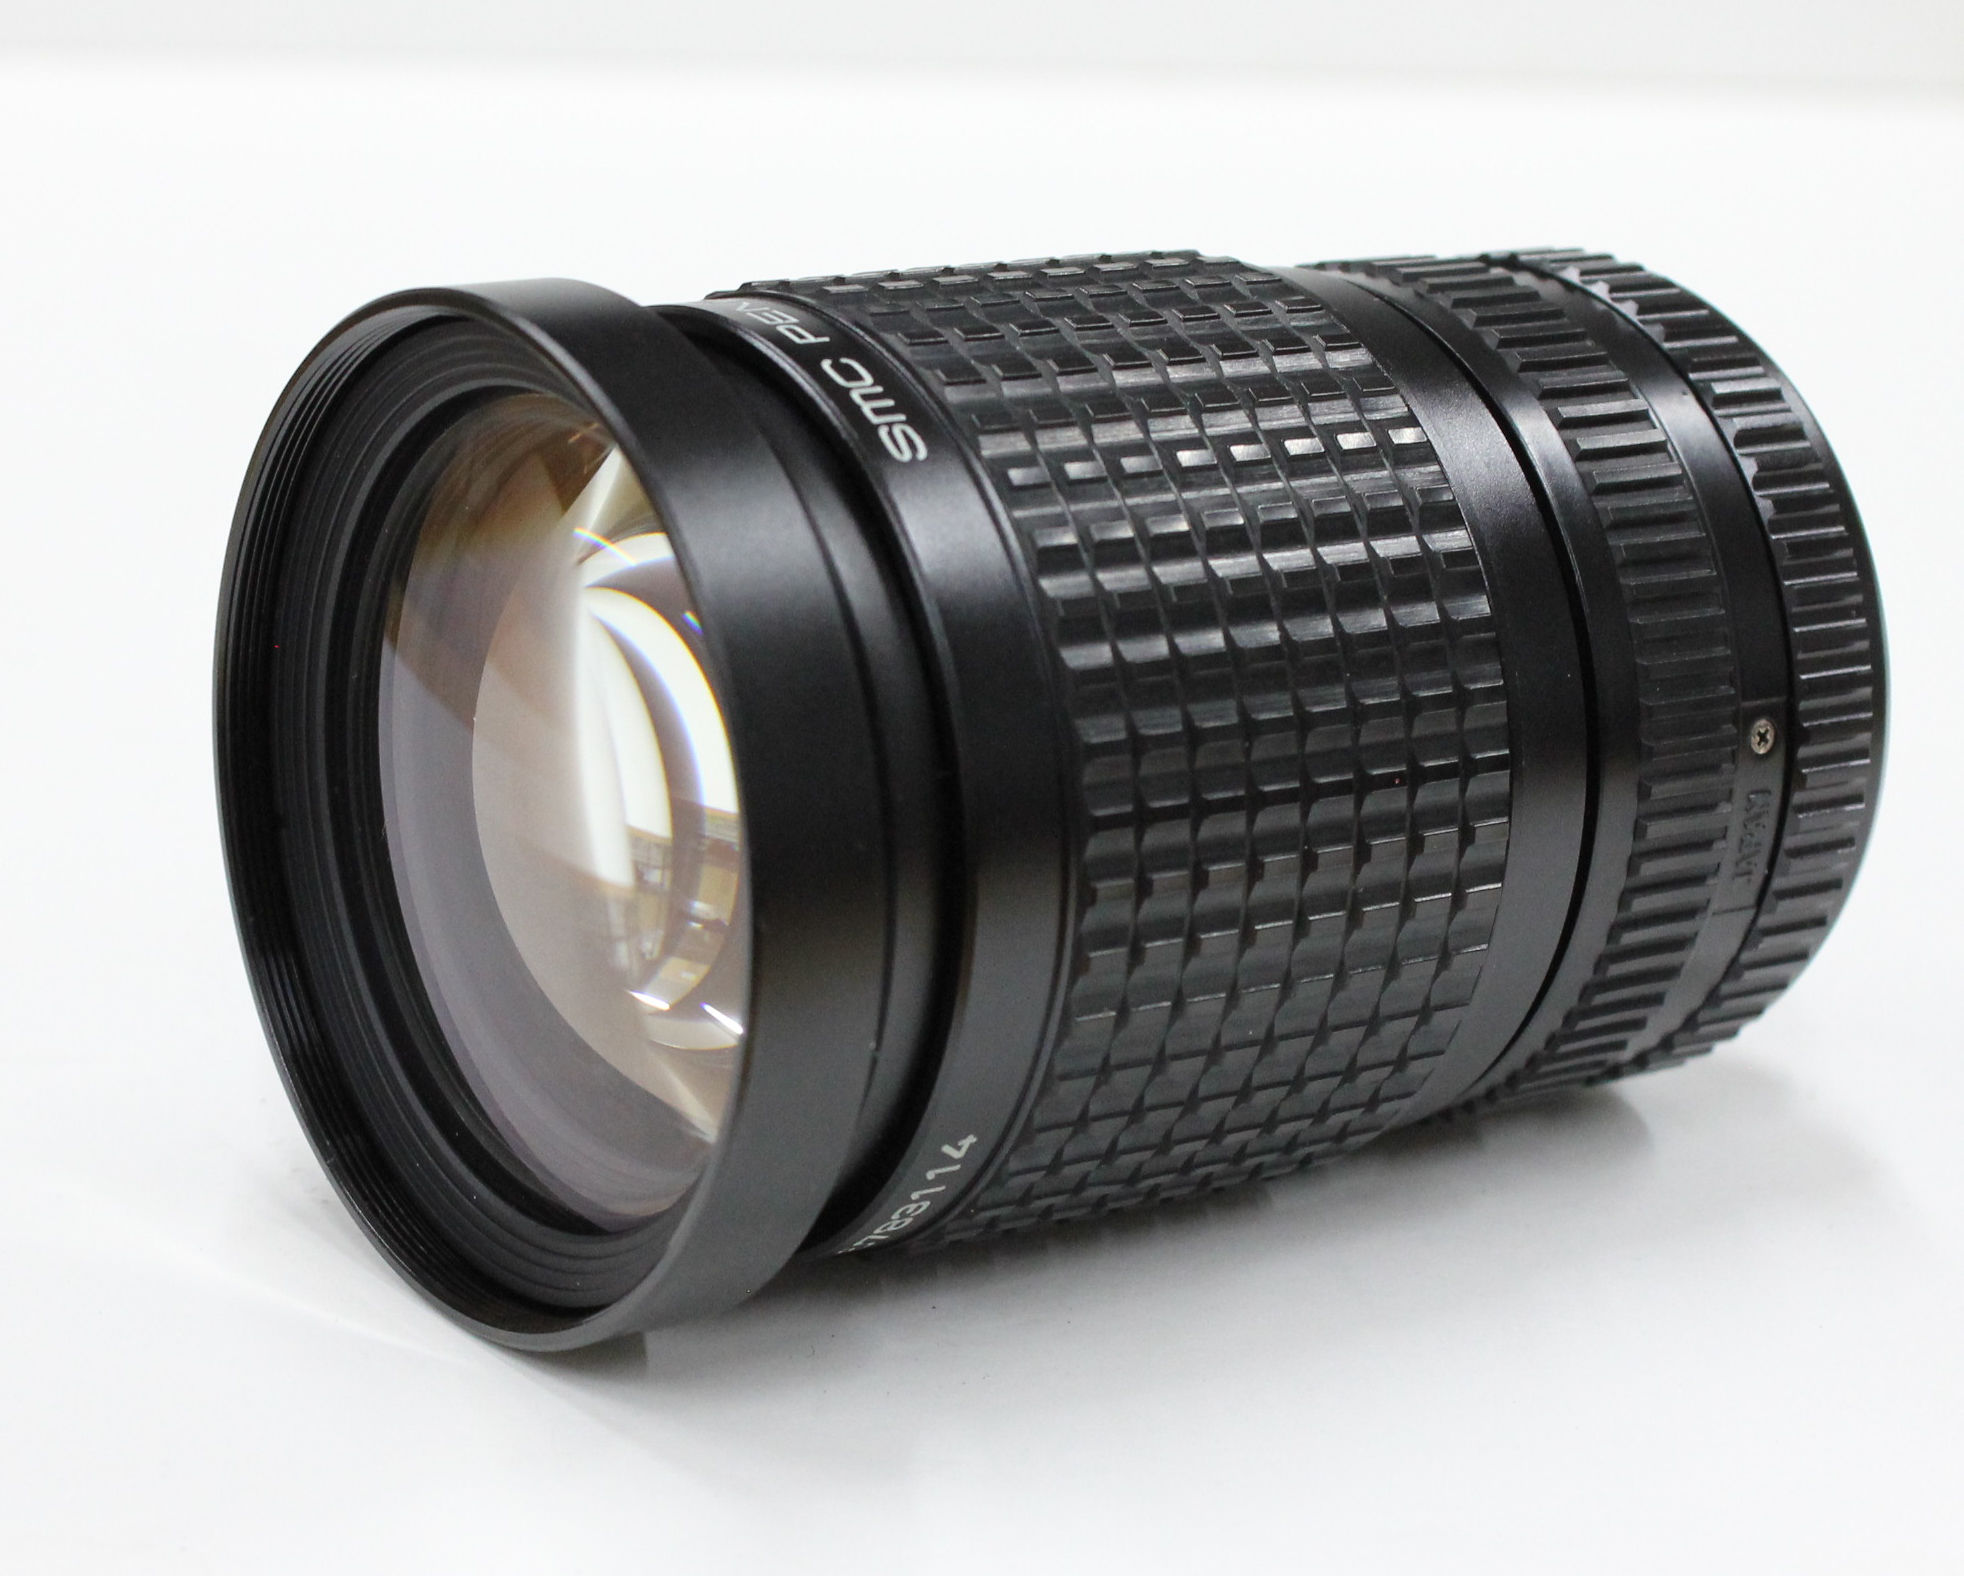 [Mint] Pentax SMC PENTAX-A ZOOM 35-105mm F/3.5 K Mount Lens from Japan